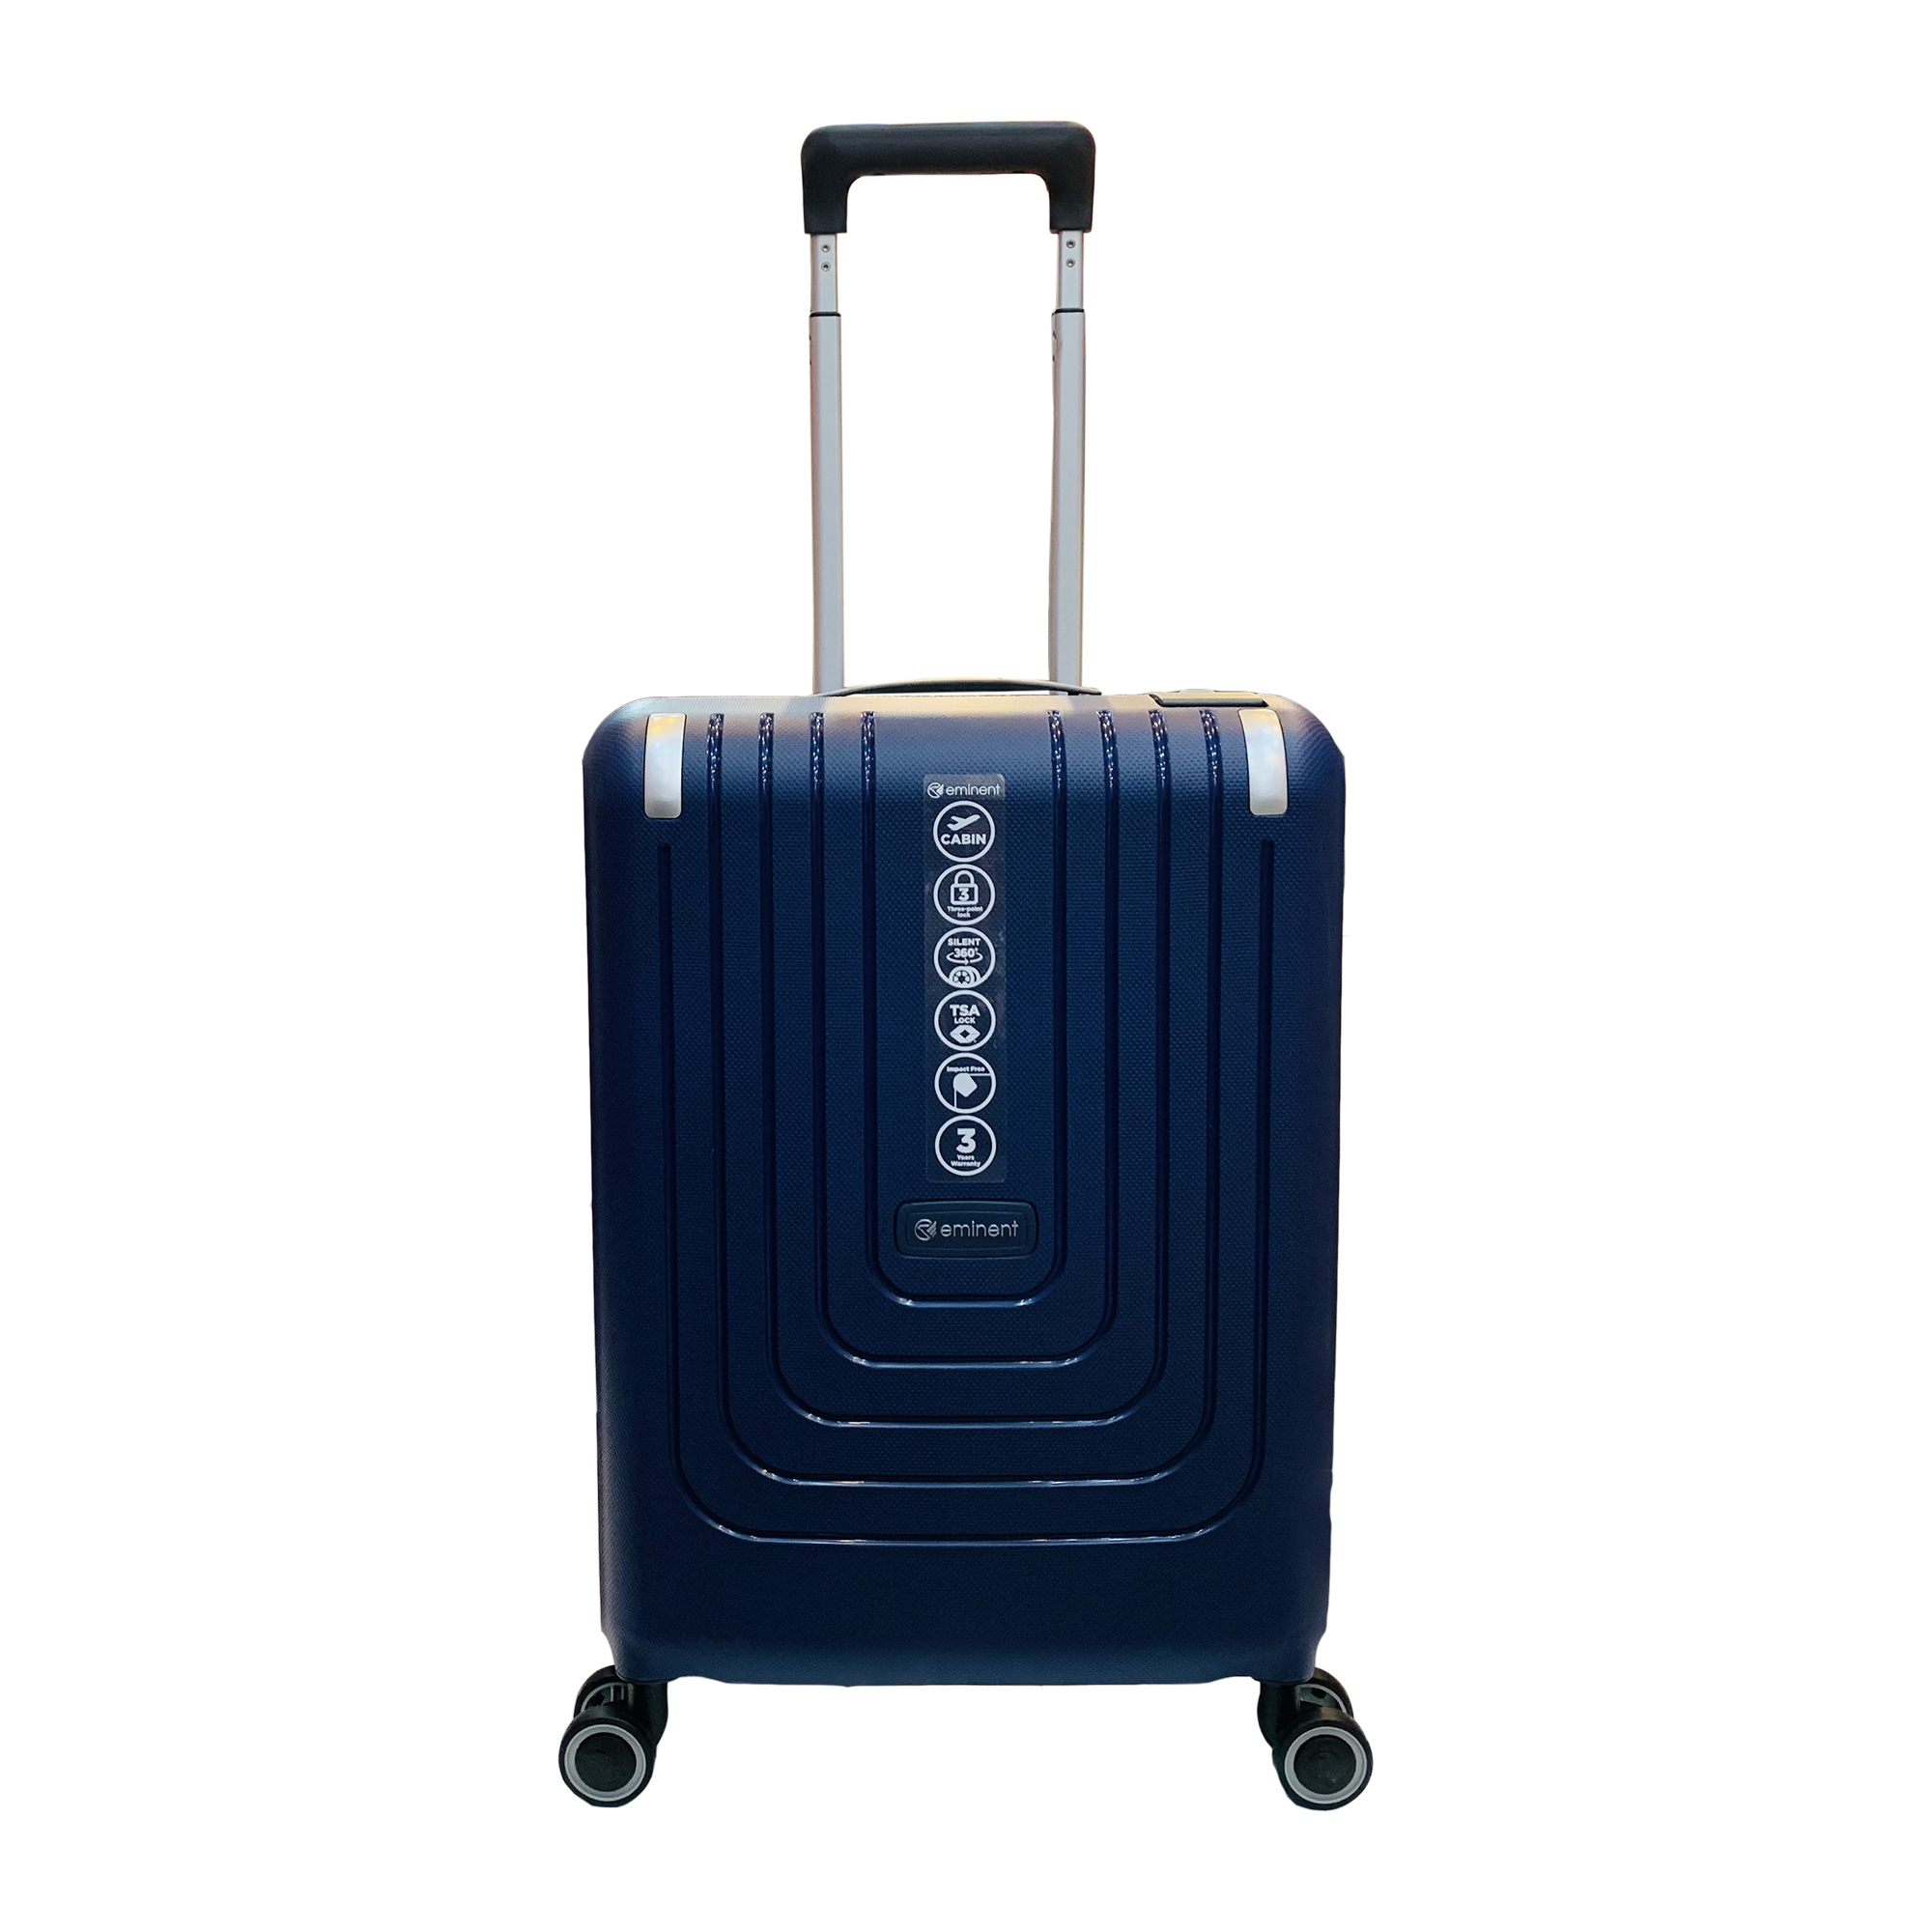 چمدان امیننت مدل C0402 سایز کوچک